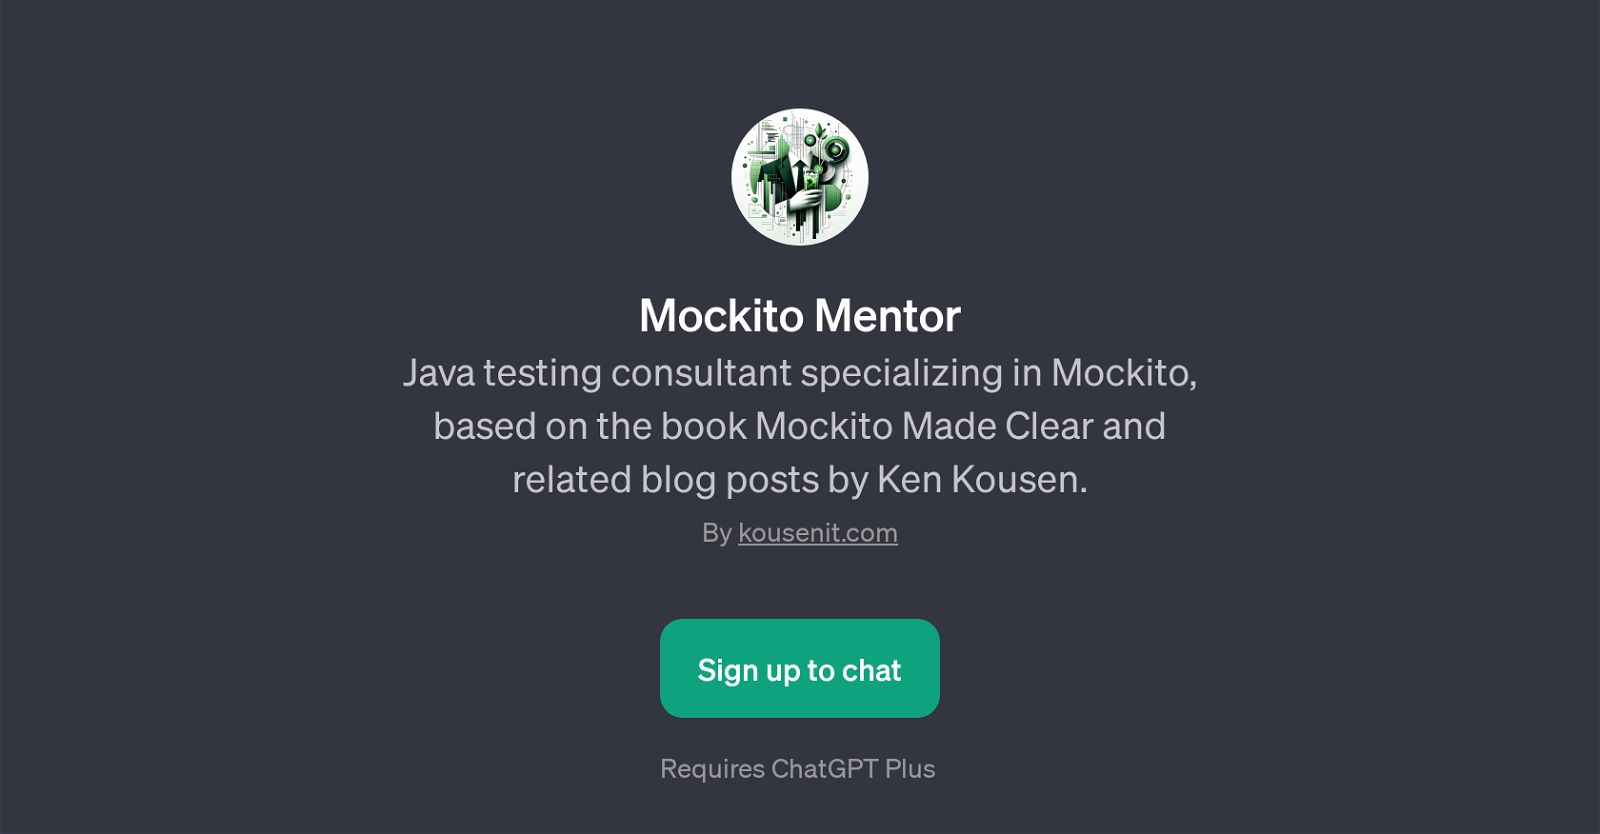 Mockito Mentor website